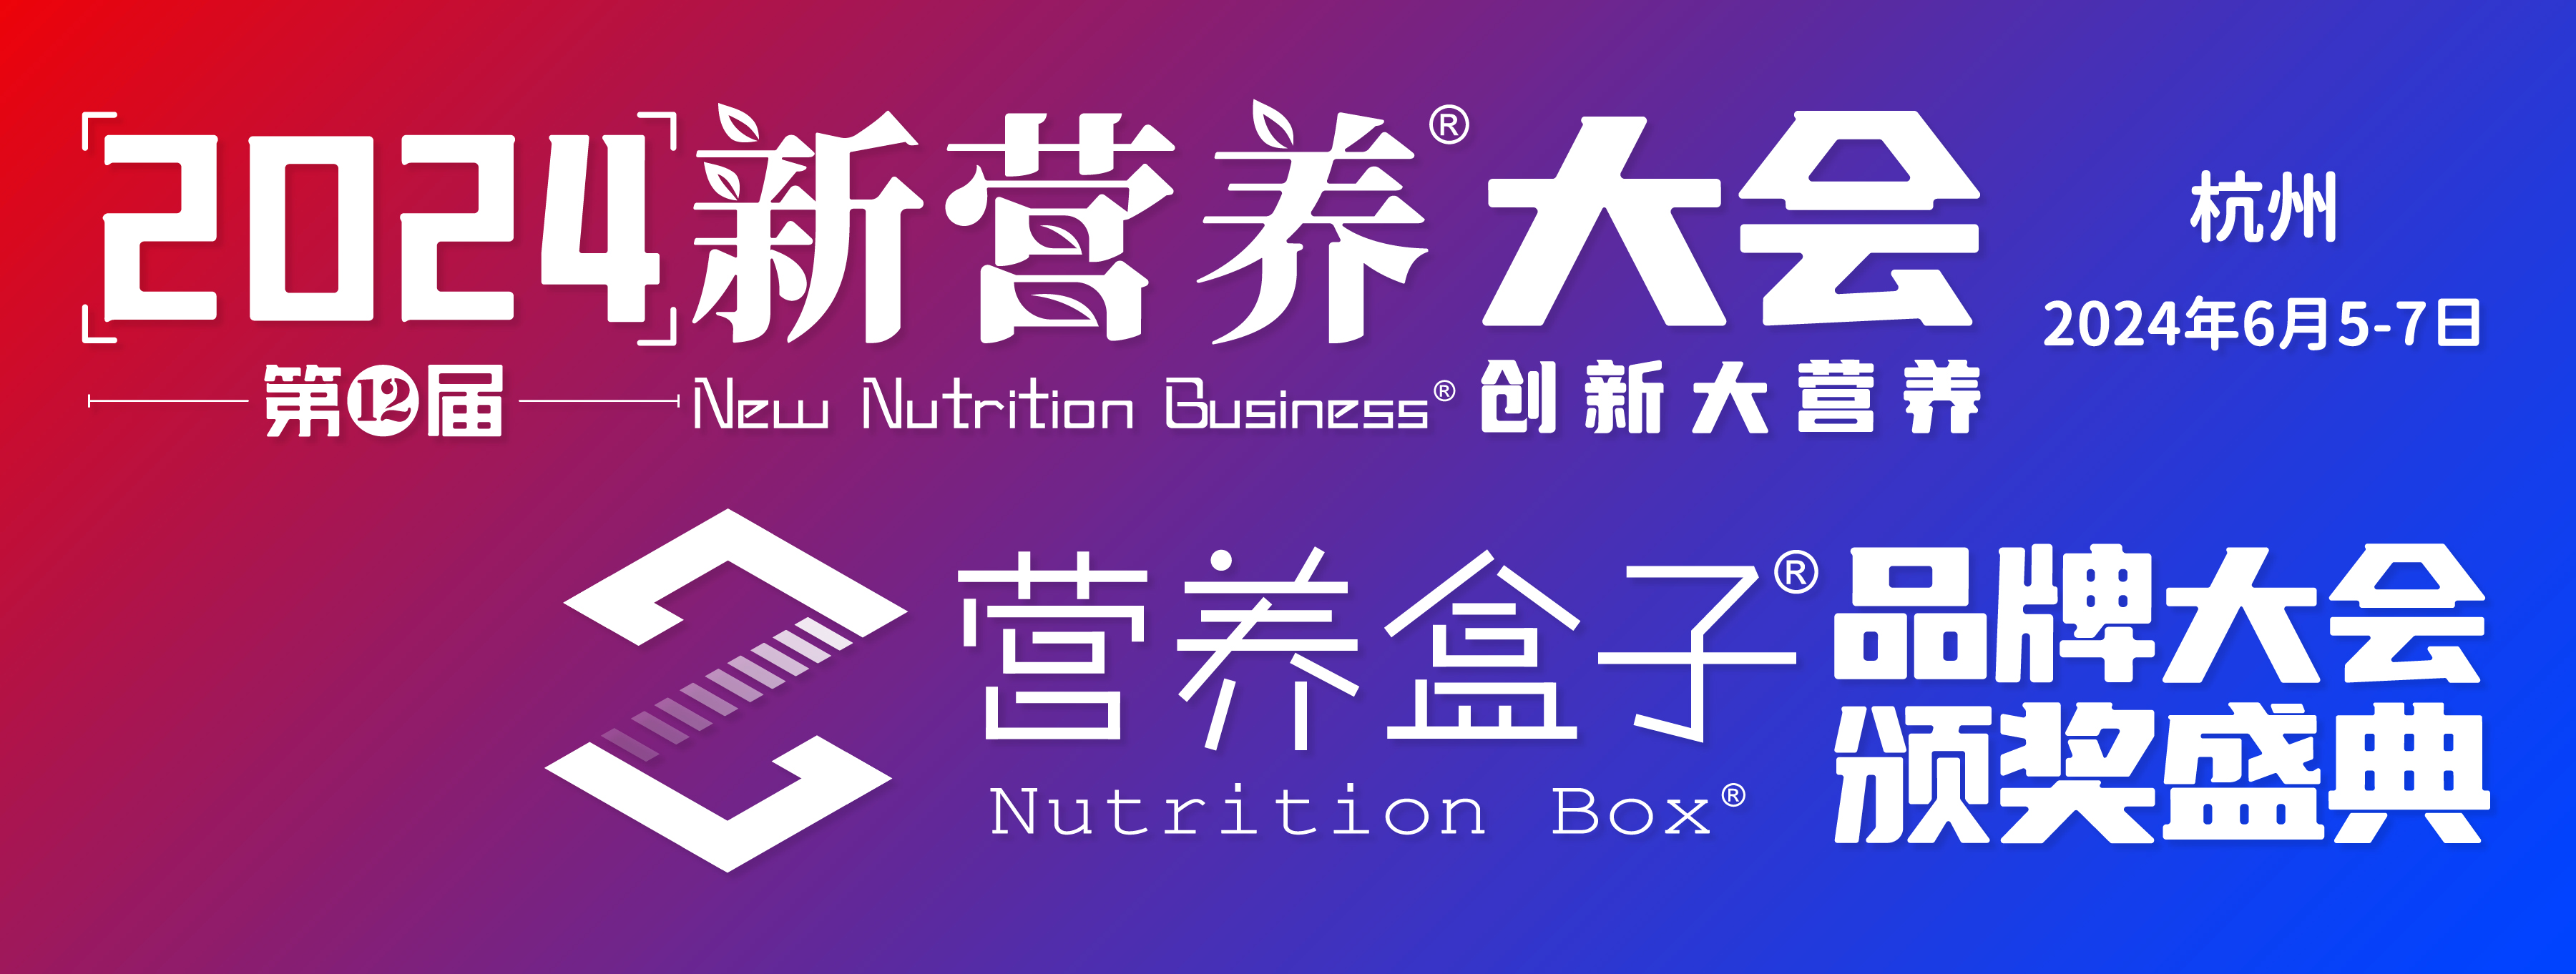 2024新营养大会营养盒子品牌大会暨颁奖盛典